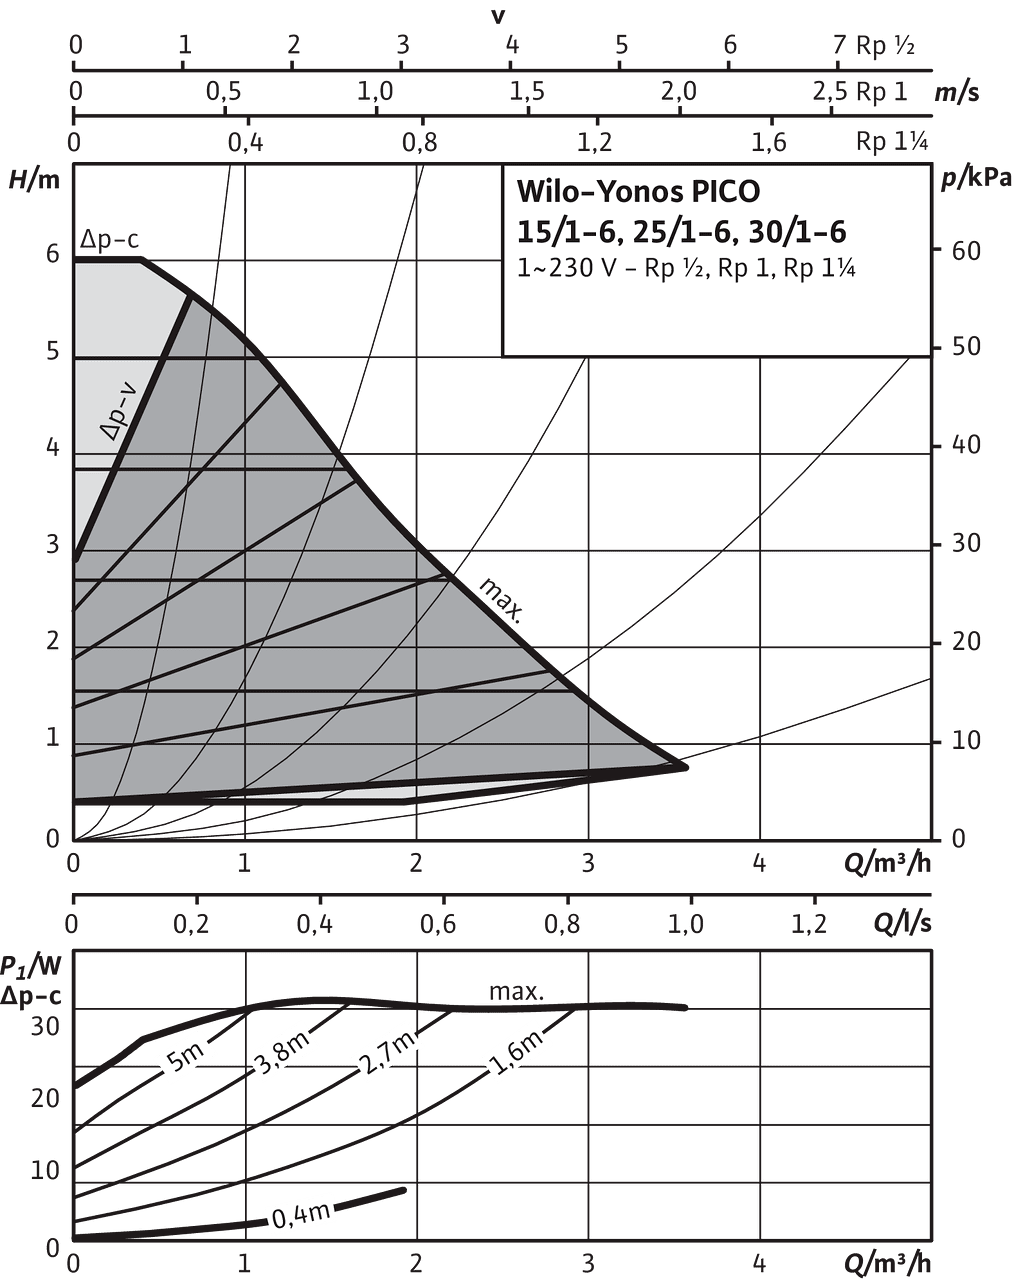 Yonos PICO 15/1-6, 25/1-6, 30/1-6, Δp-v (variable)